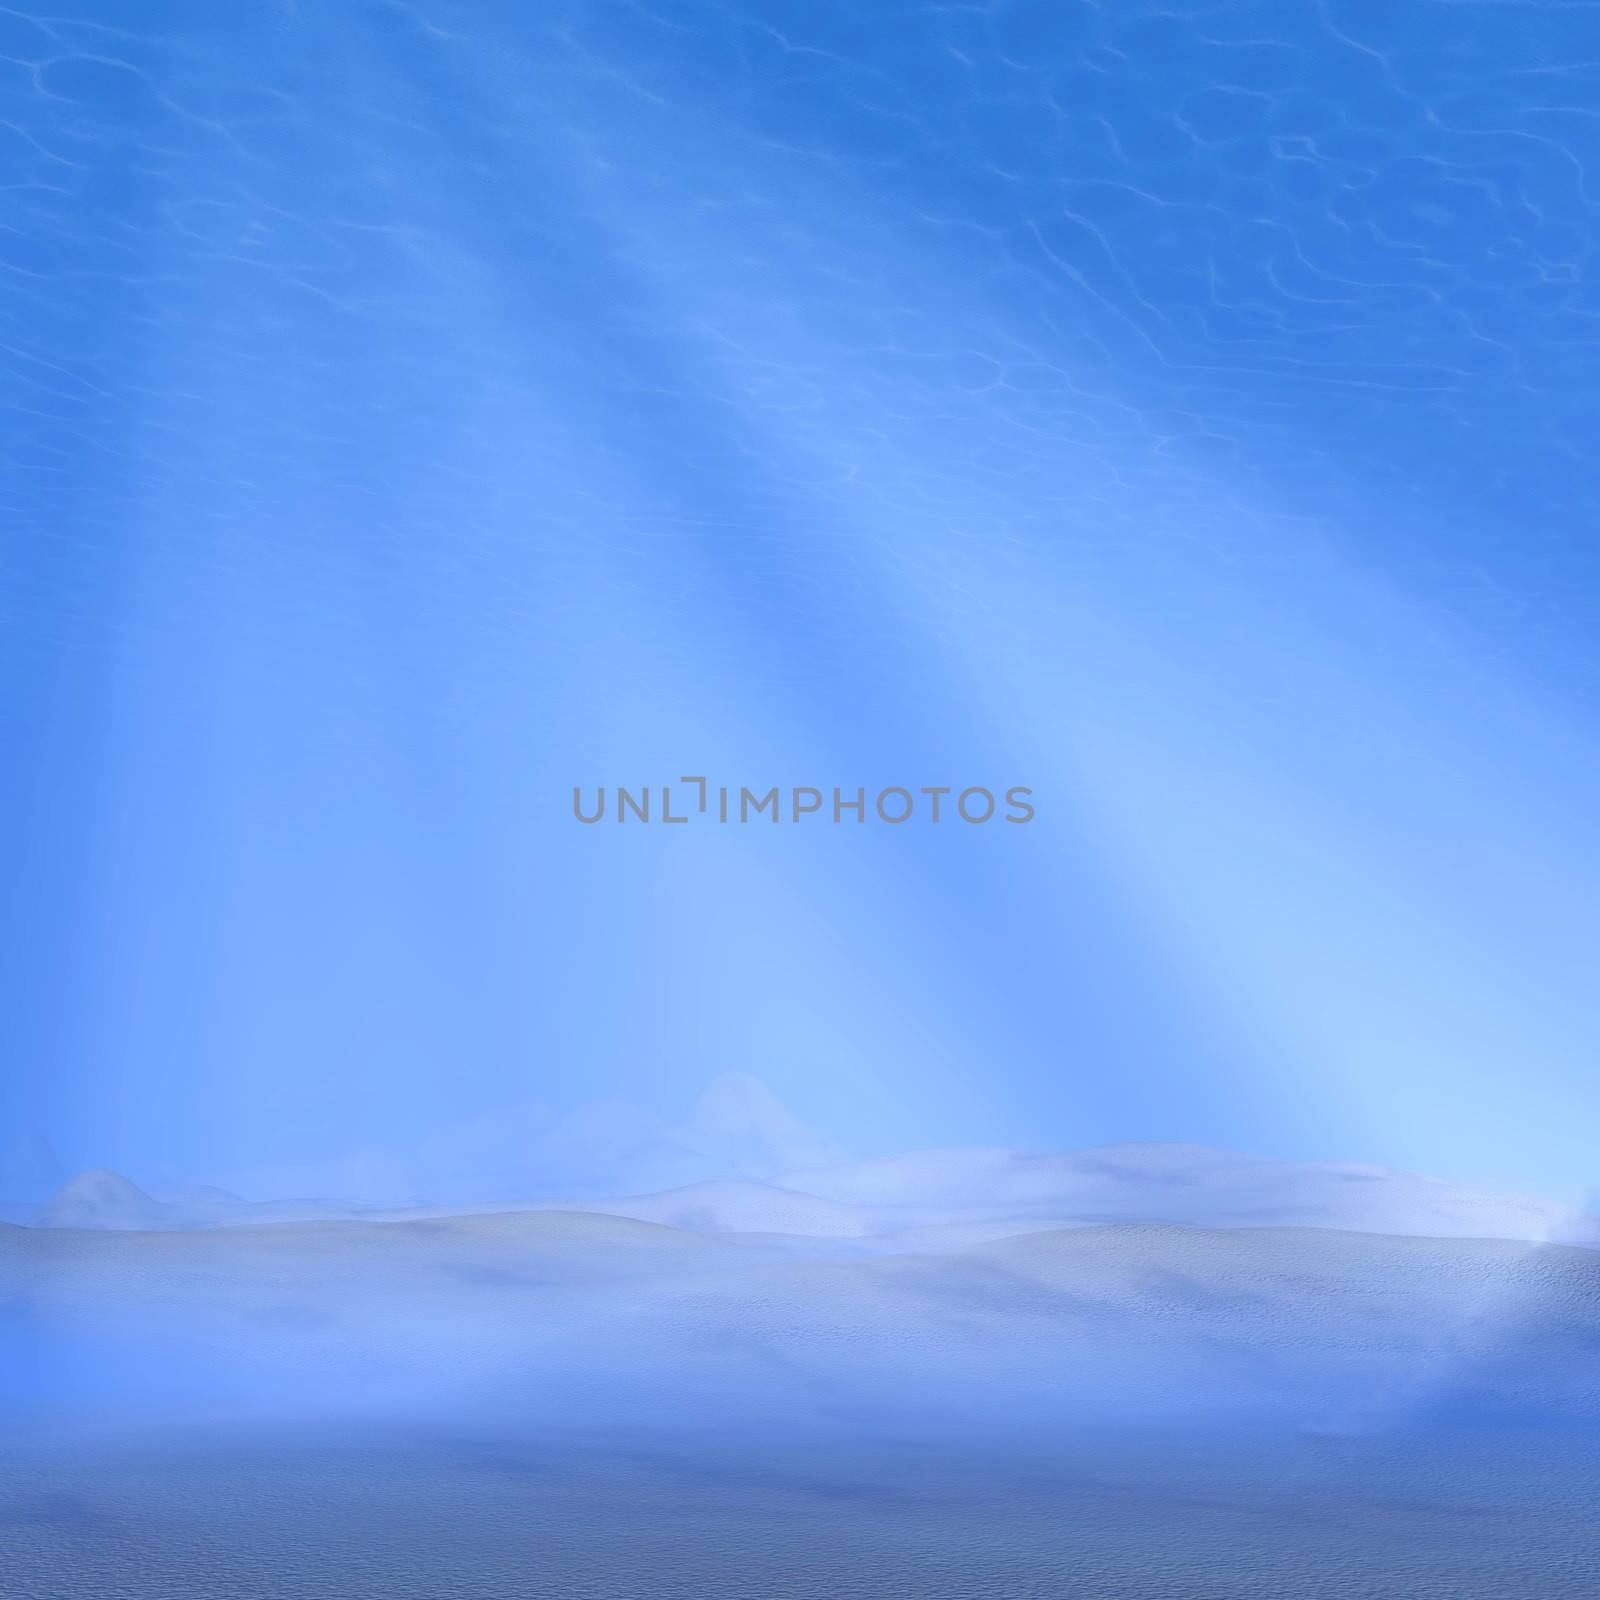 Underwater scene - 3D render by Elenaphotos21